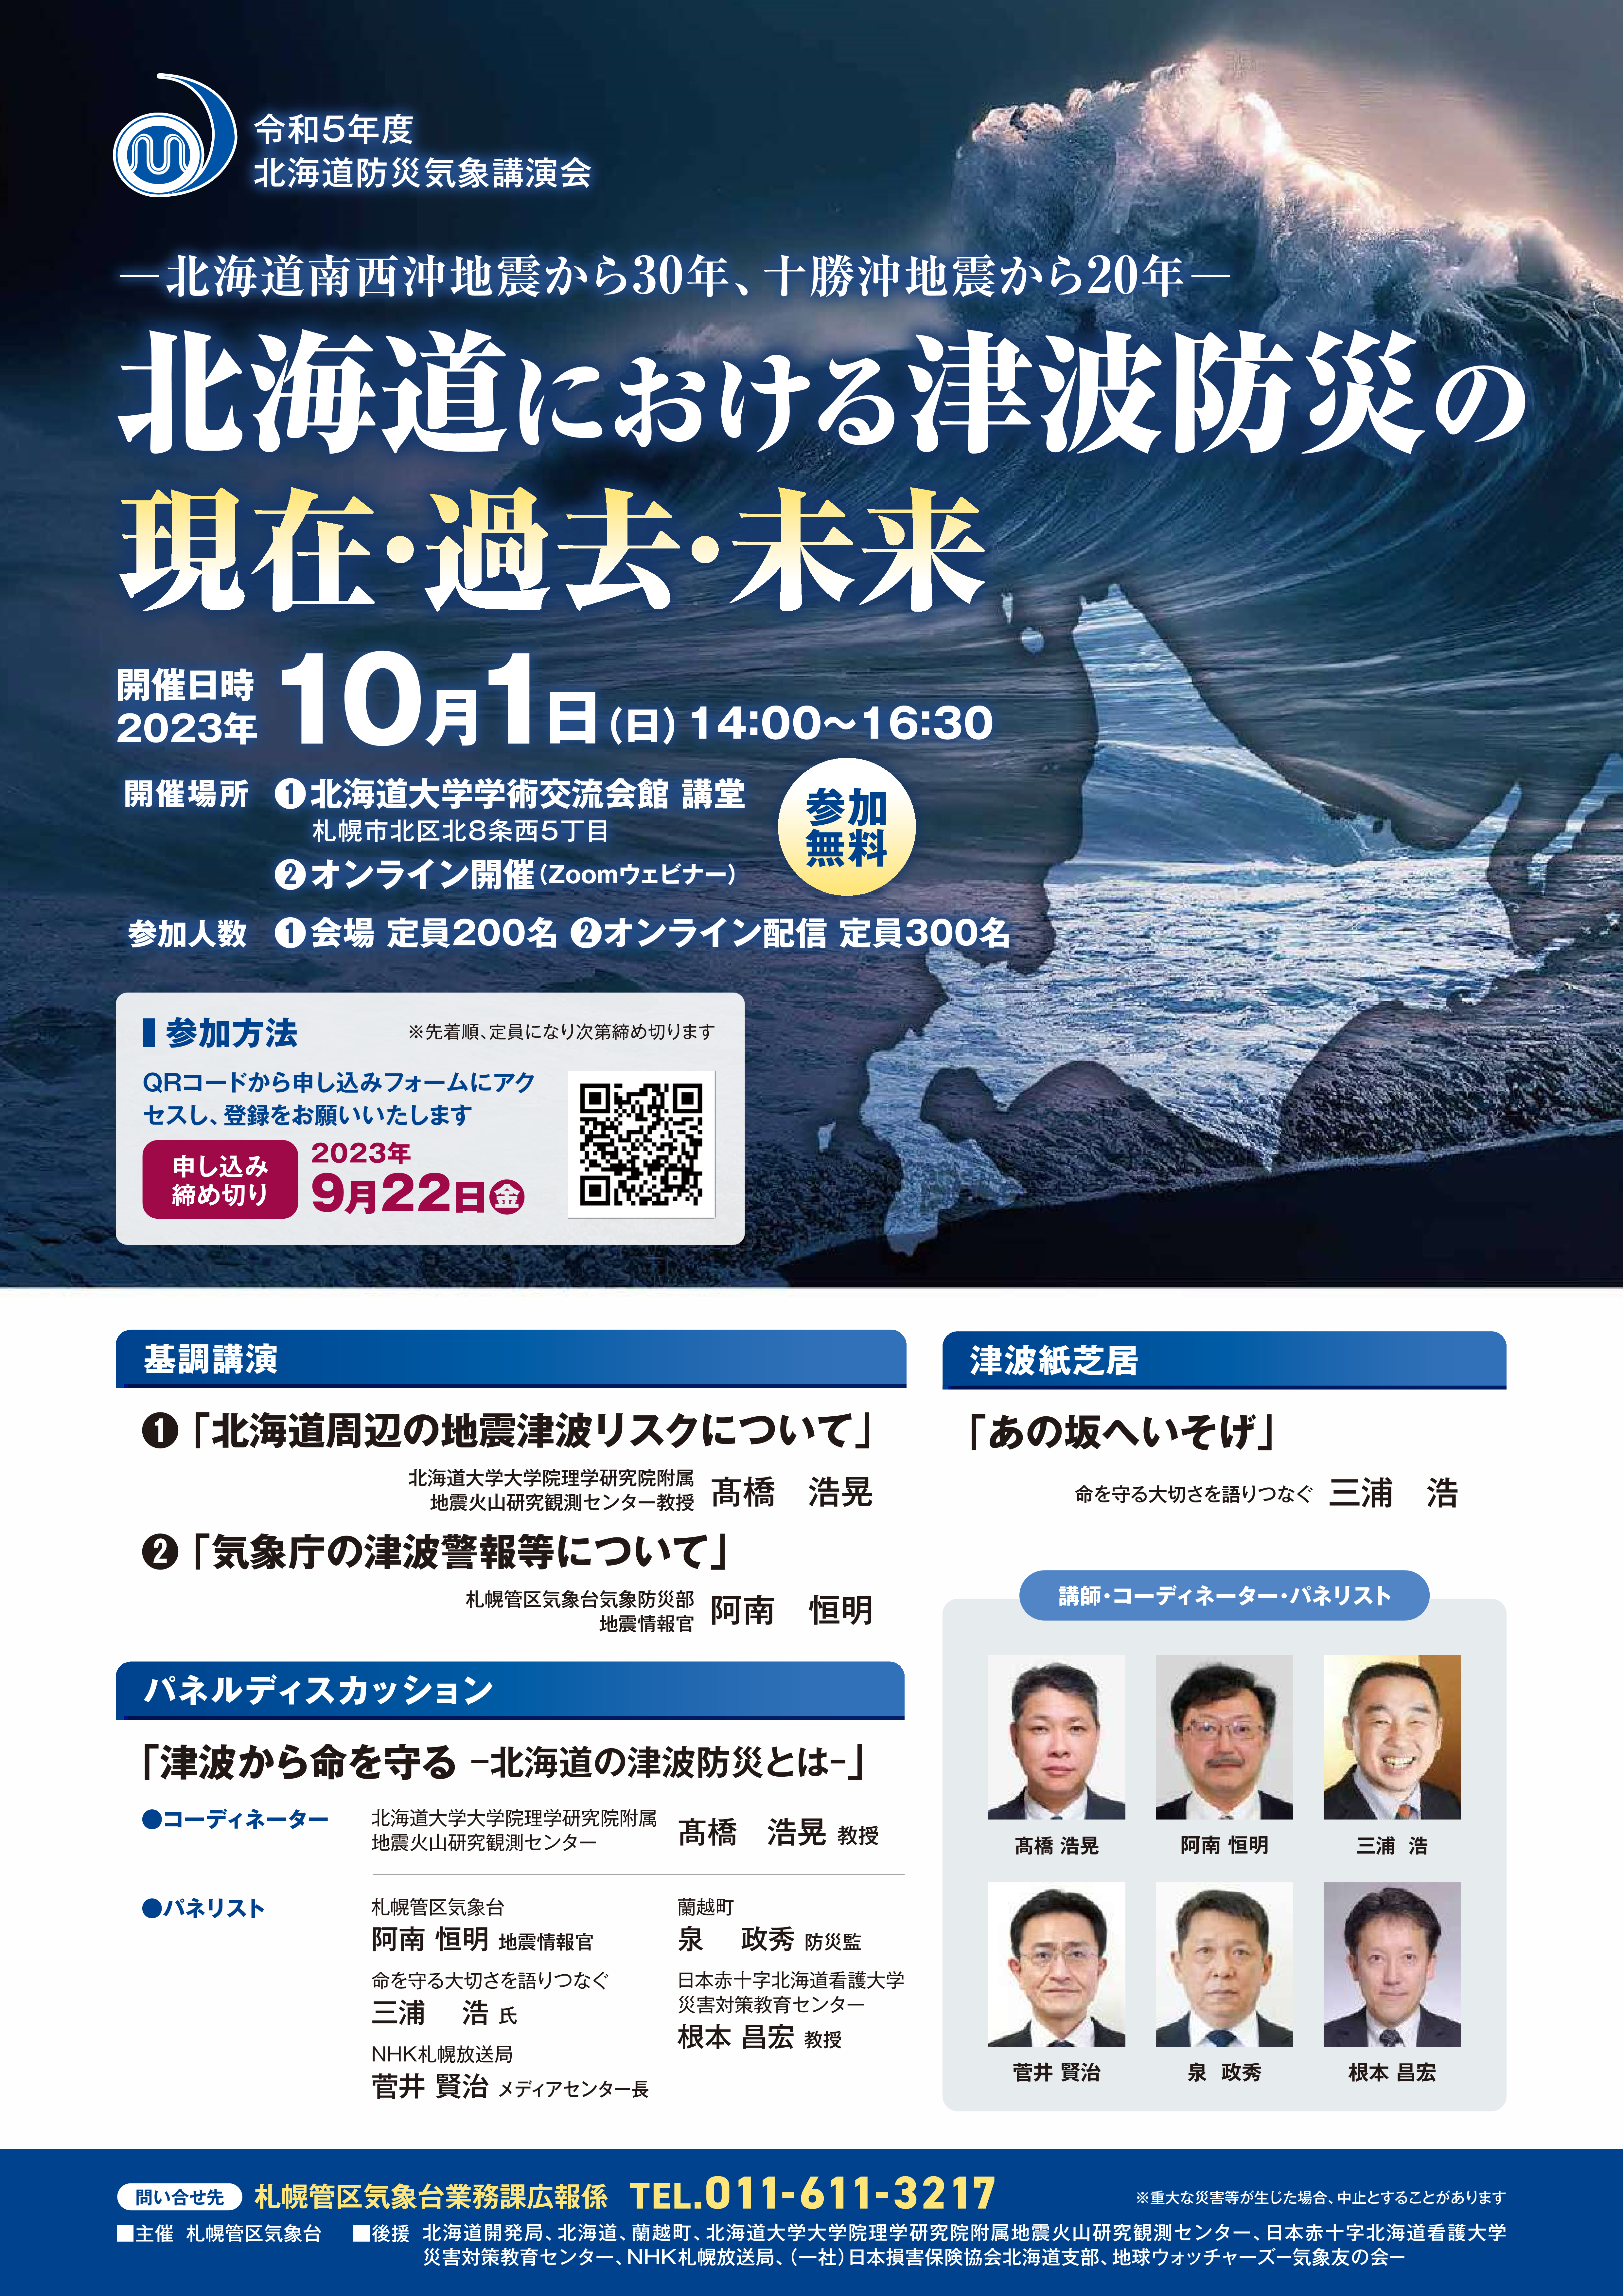 令和5年度北海道防災気象講演会「北海道における津波防災の現在・過去・未来」を開催、の画像です。クリックすると 令和5年度北海道防災気象講演会のちらし のページに移動します。